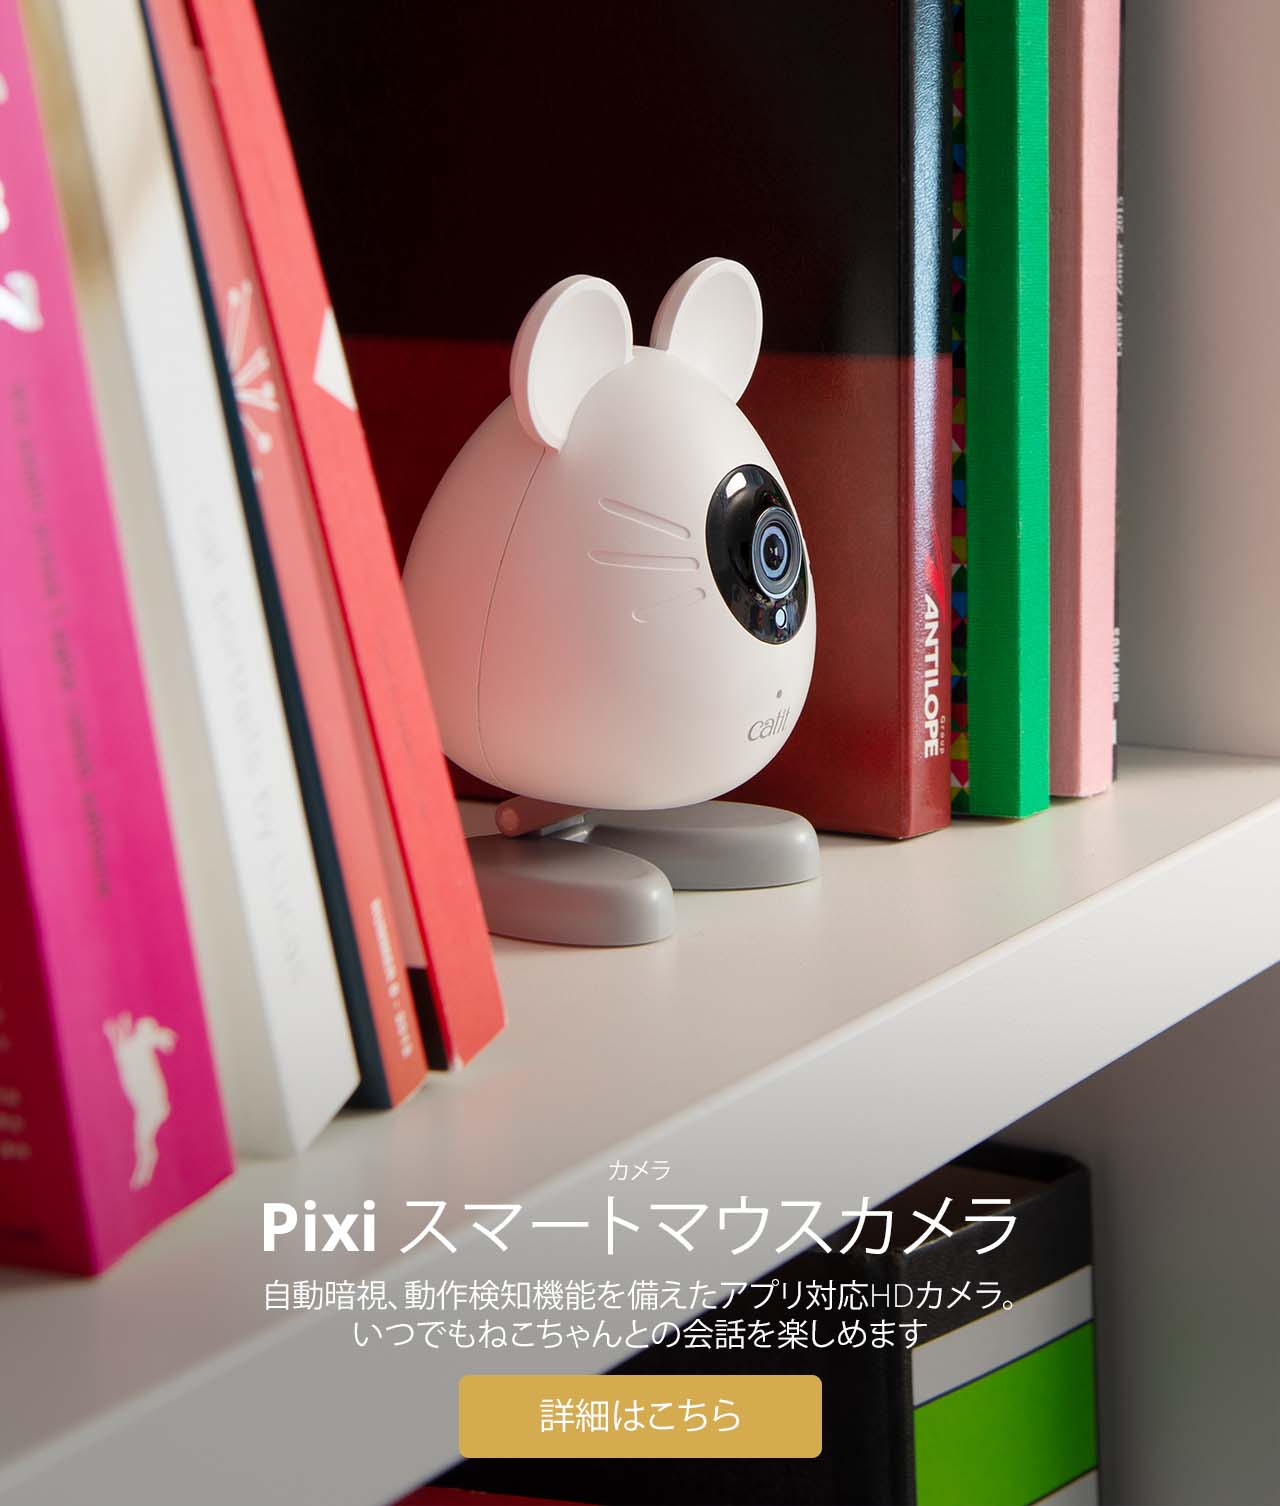 Pixi スマートマウスカメラ